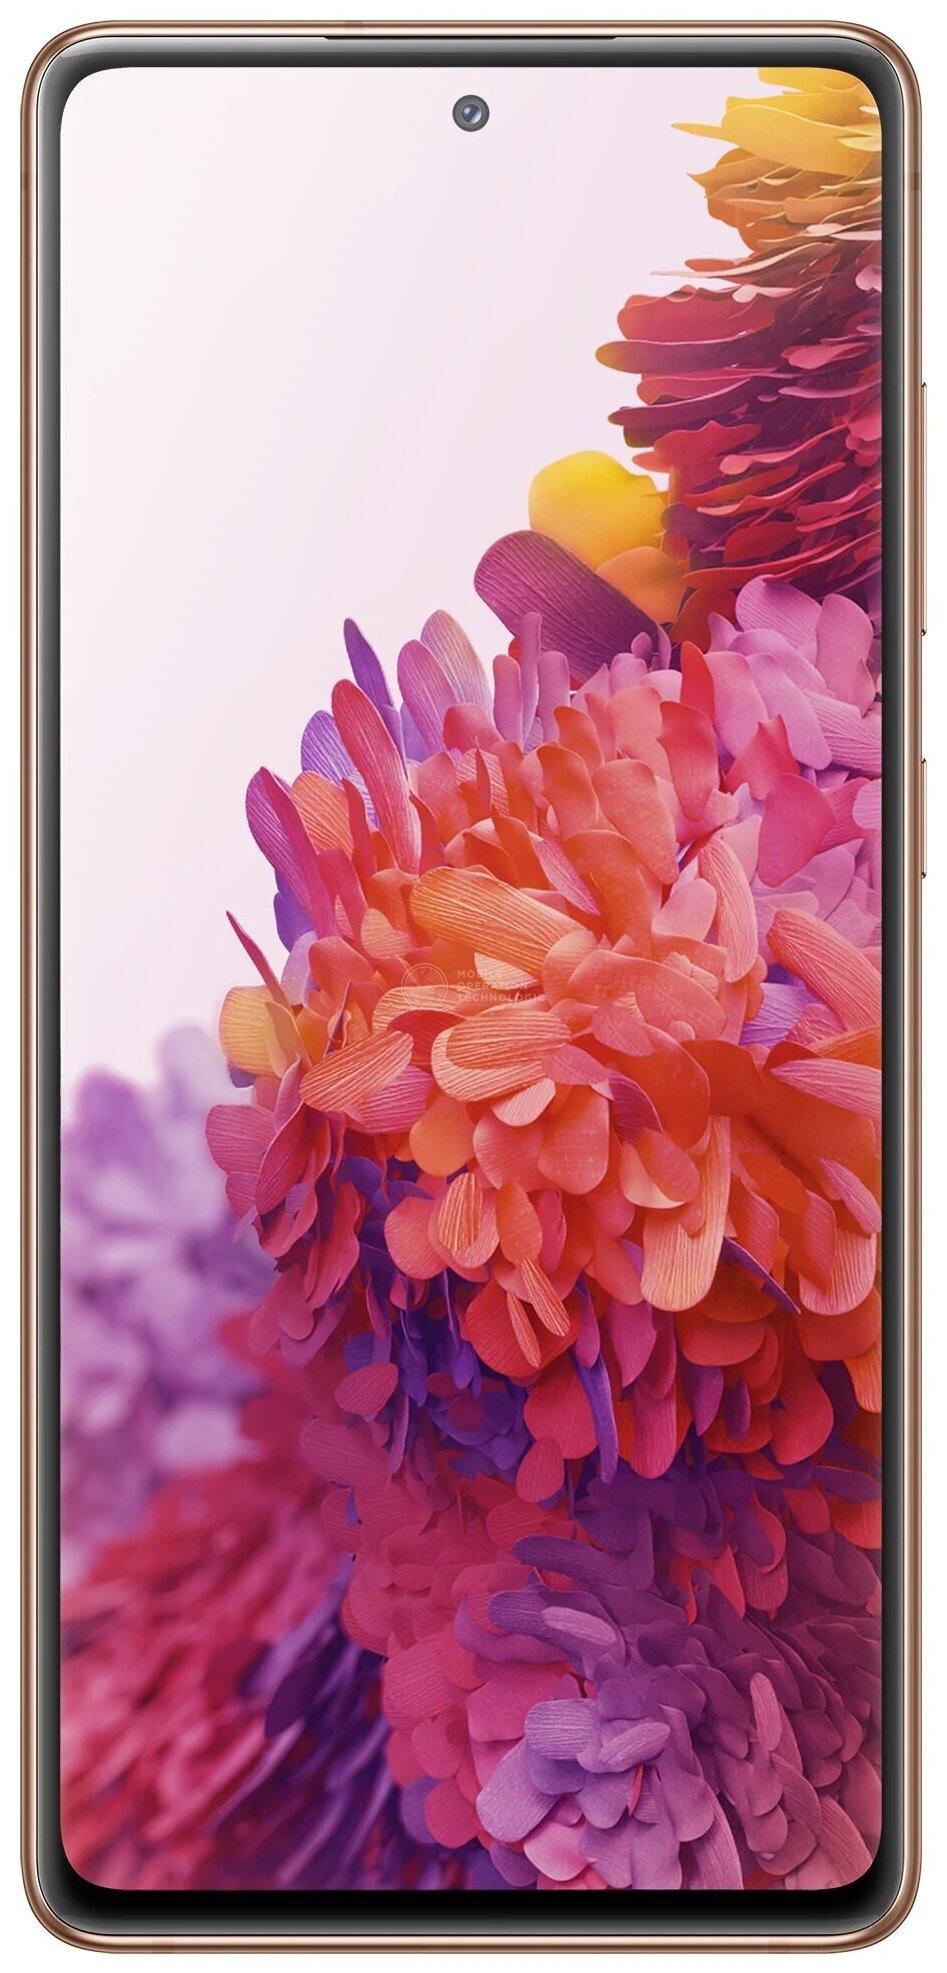 Samsung Galaxy S20 FE (SM-G780F)